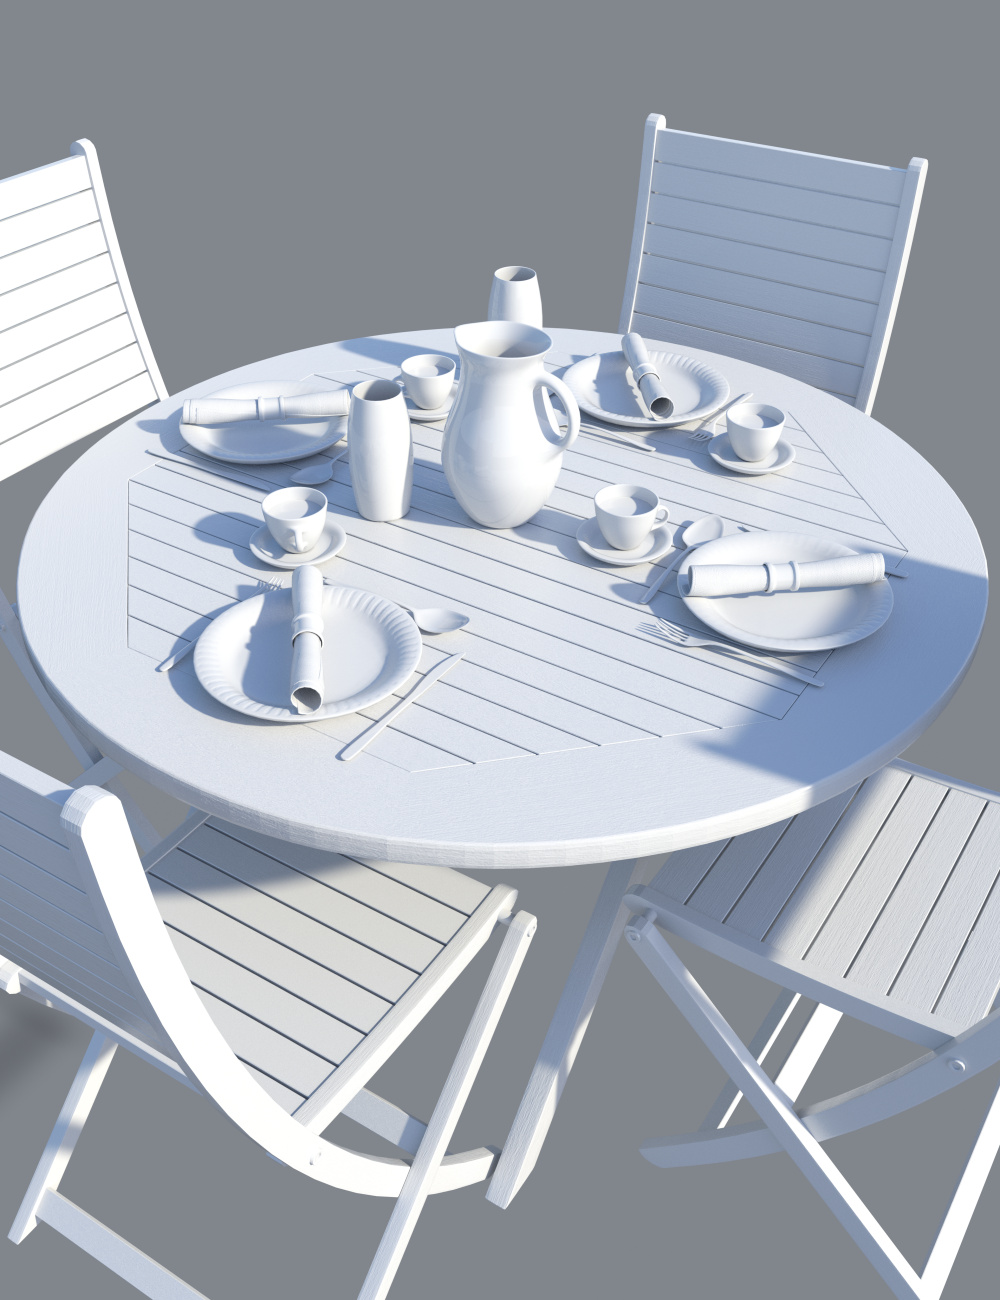 Patio Dining by: Merlin Studios, 3D Models by Daz 3D